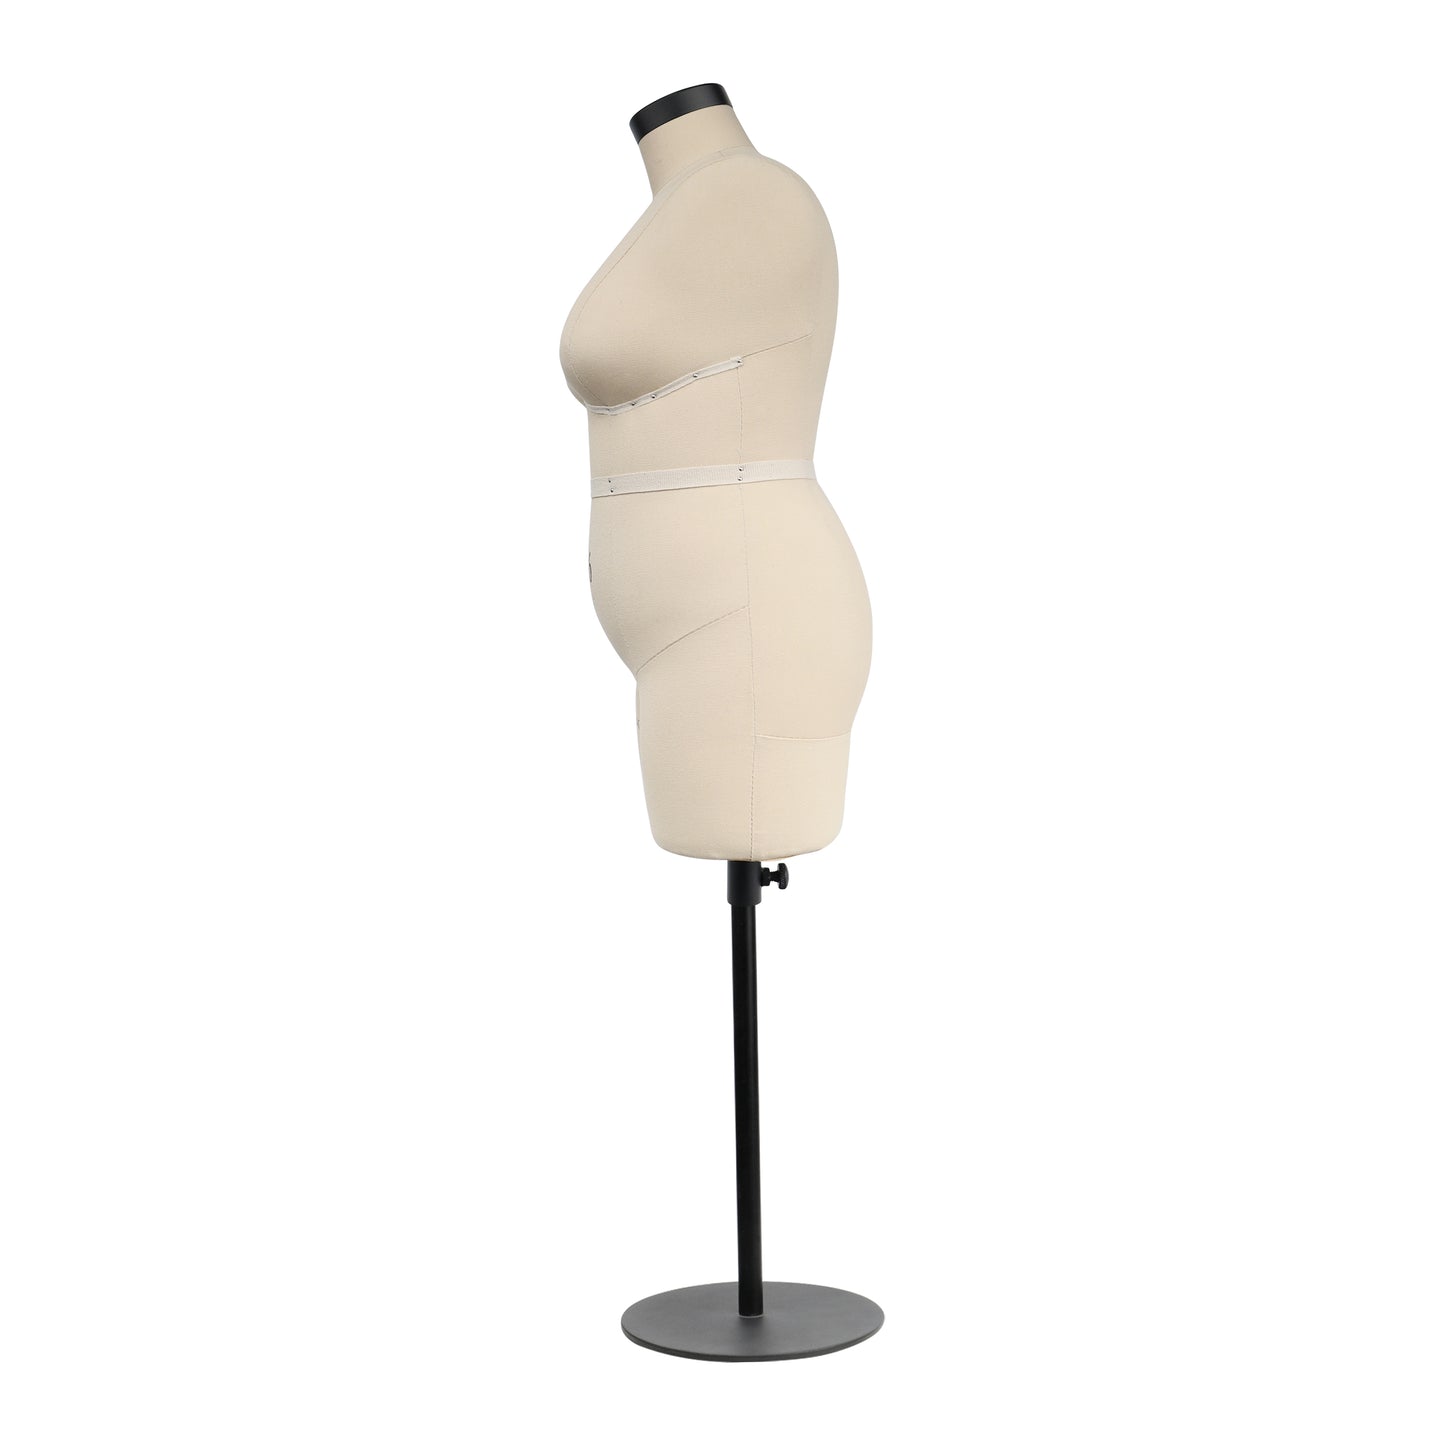 DE-LIANG Half scale dress form, DL268 plus size 16 woman mannequin, dressmaker dummy, tailor female mannequin, 16 scale miniature  NOT ADULT size.